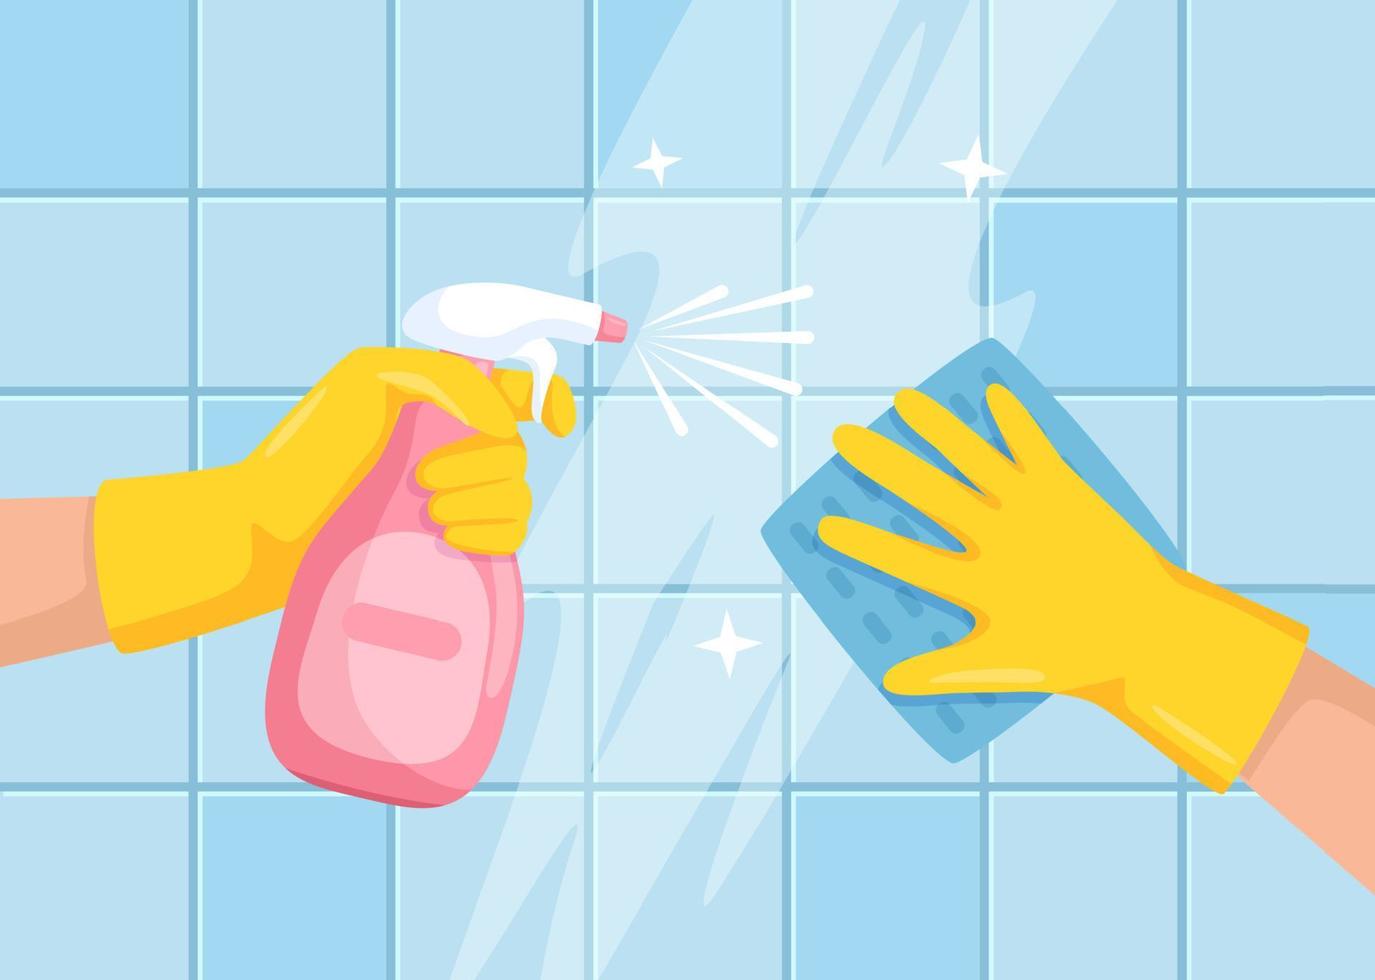 limpieza superficie. manos con rociar botella y paño limpiando baño loseta pared. limpieza o desinfectar superficies en casa vector ilustración